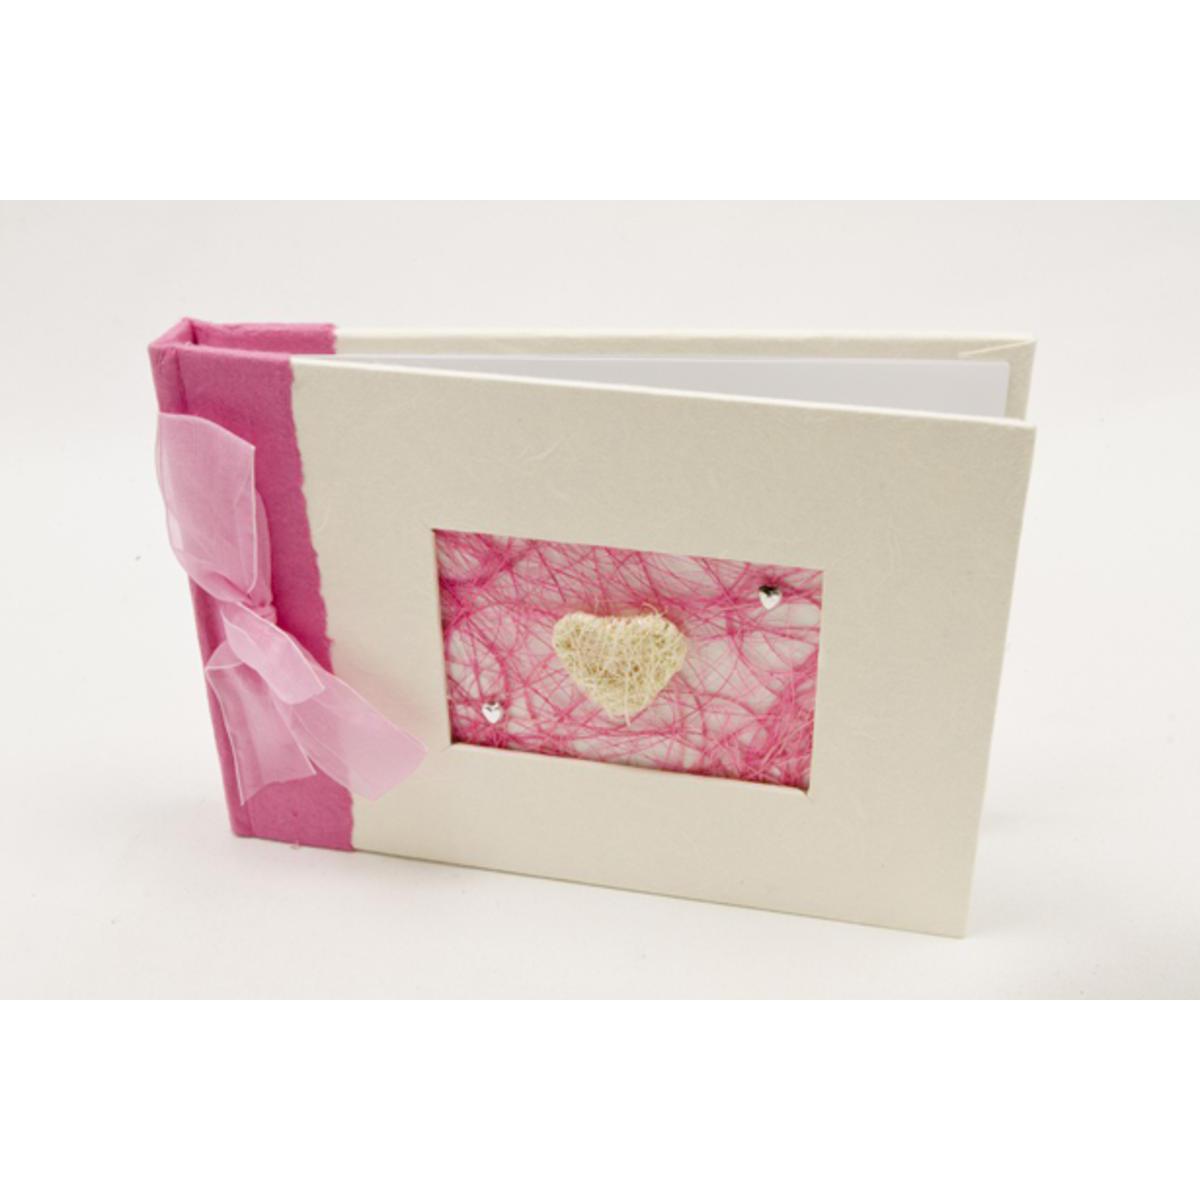 Livre d'or pour mariage forme Papillons - Papier et polyester - 21 x 15 cm - Fuchsia